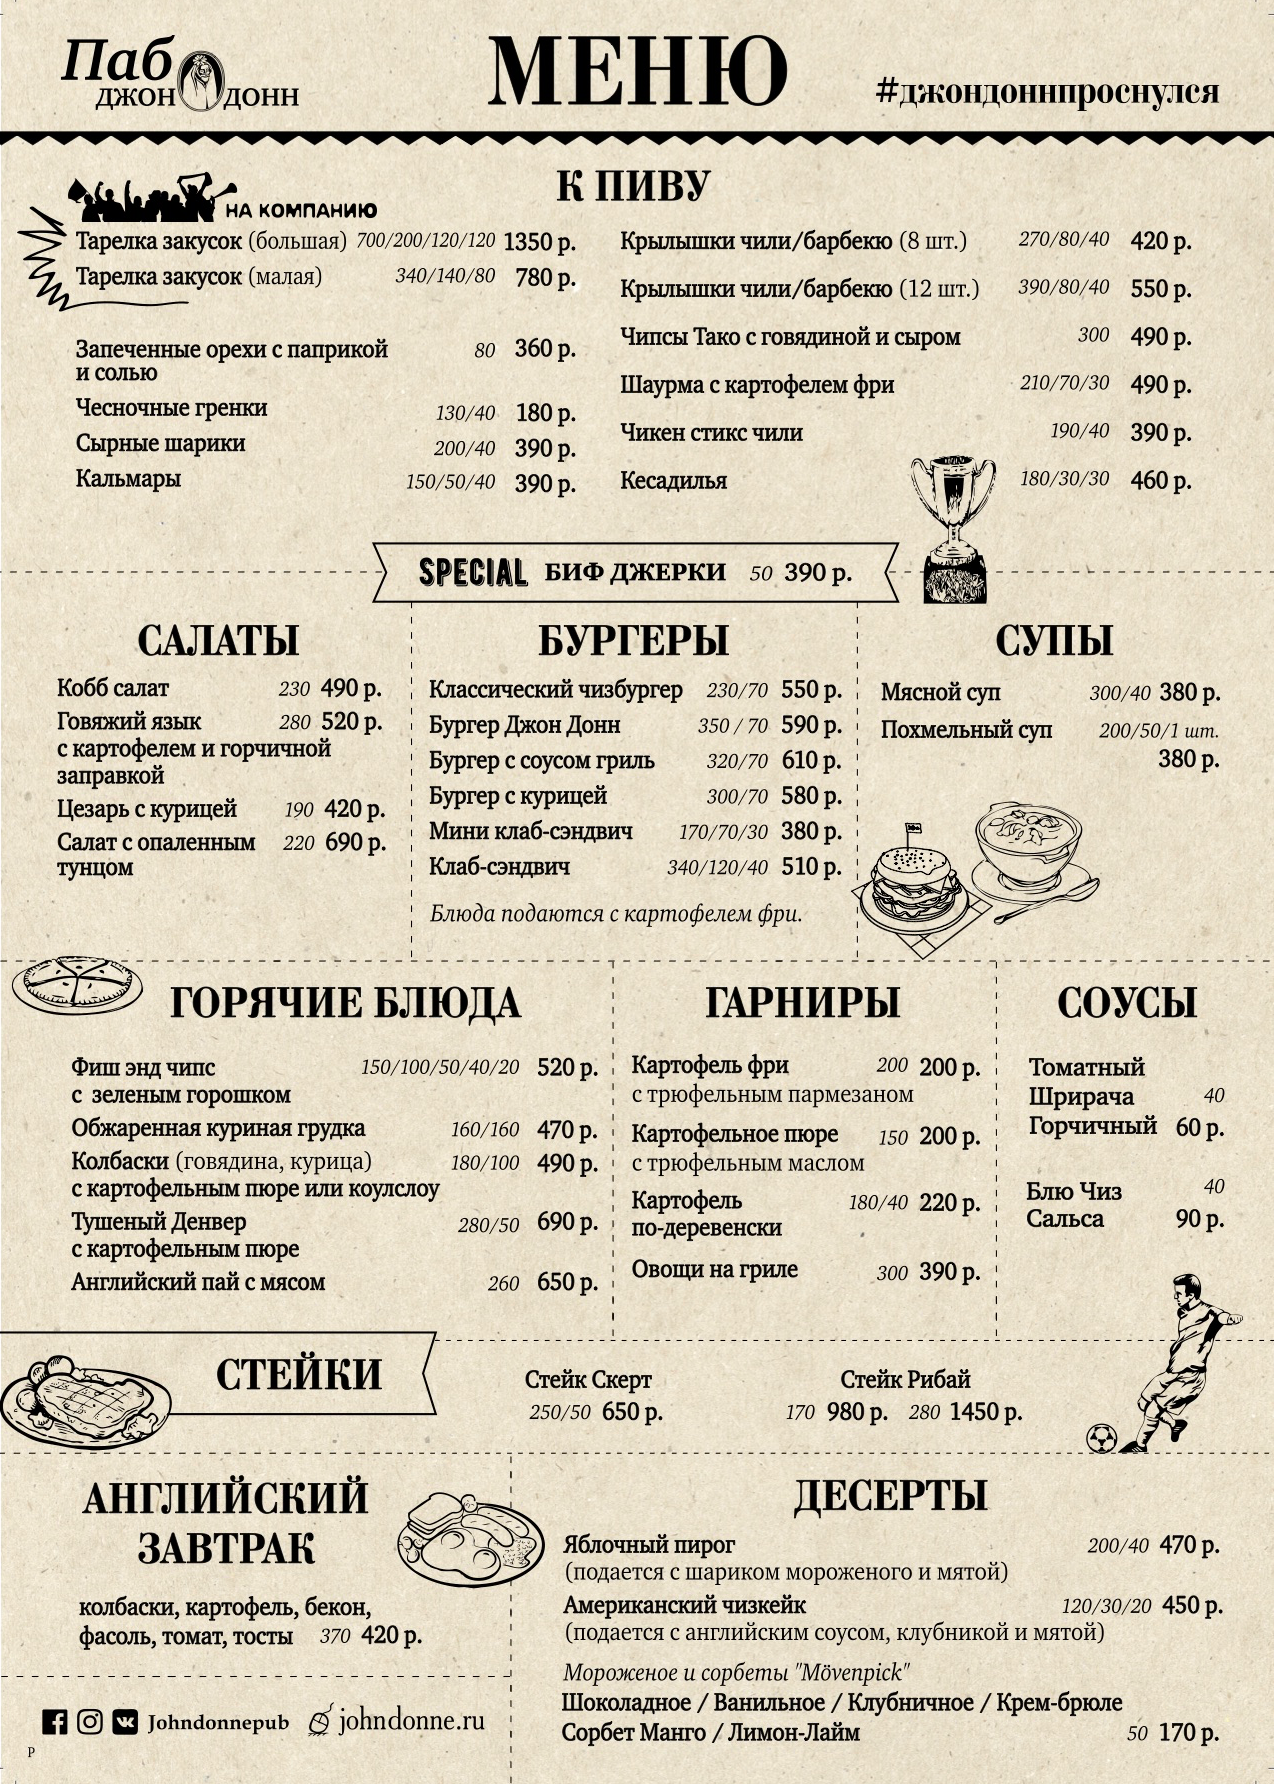 Самый дорогой ресторан в москве меню